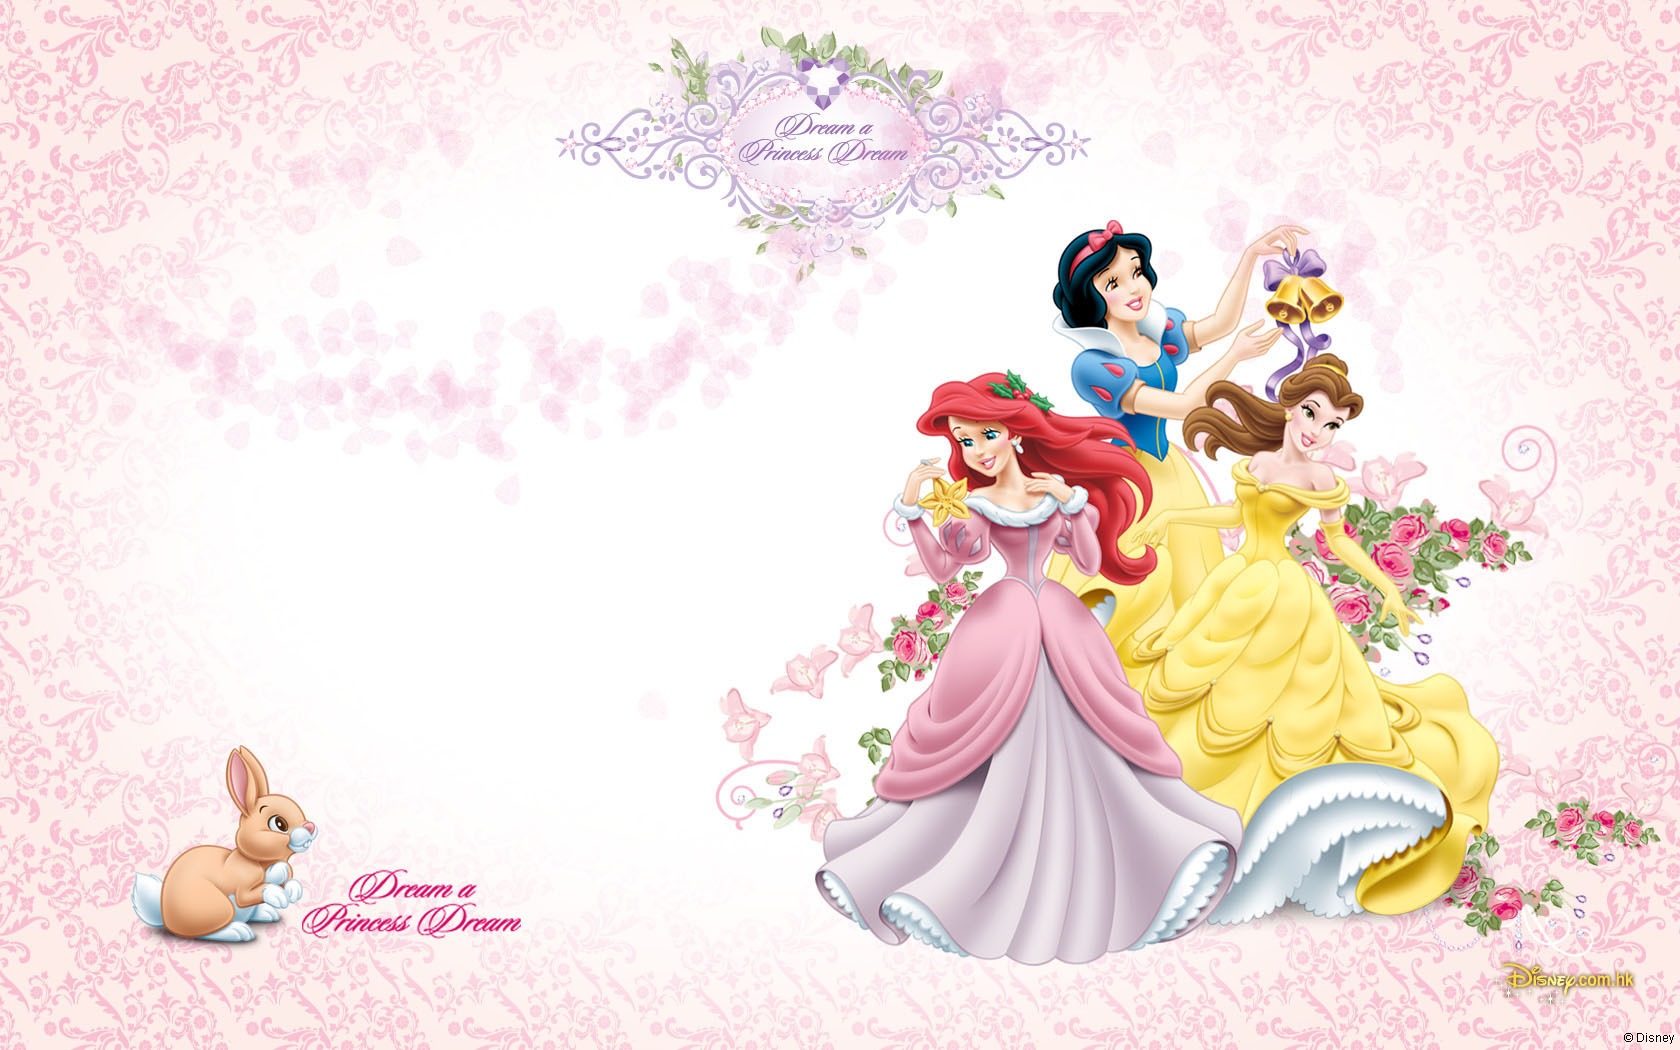 Disney Princess images Disney Princess wallpaper photos 33693784